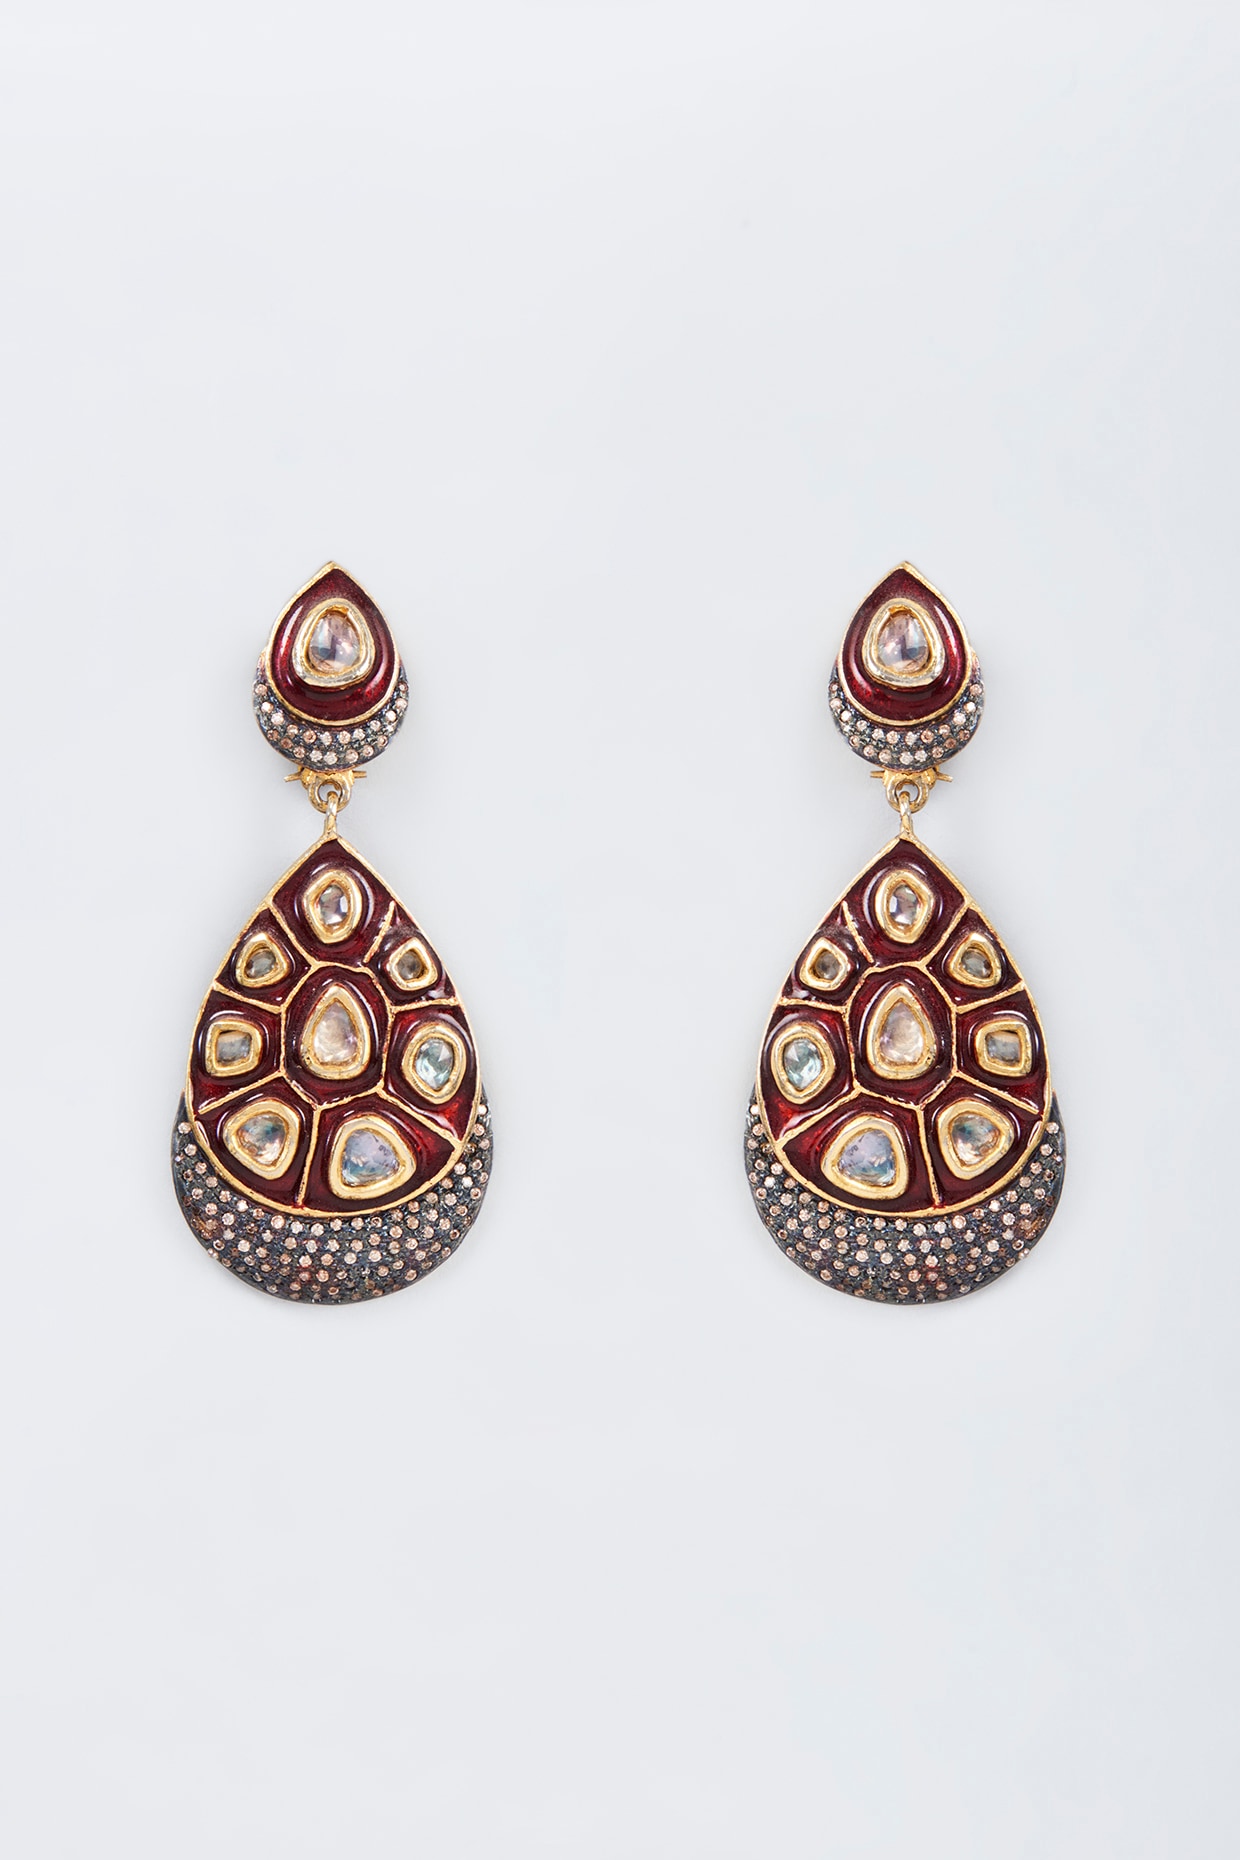 Buy Kundan Earrings for Women Online – Estele